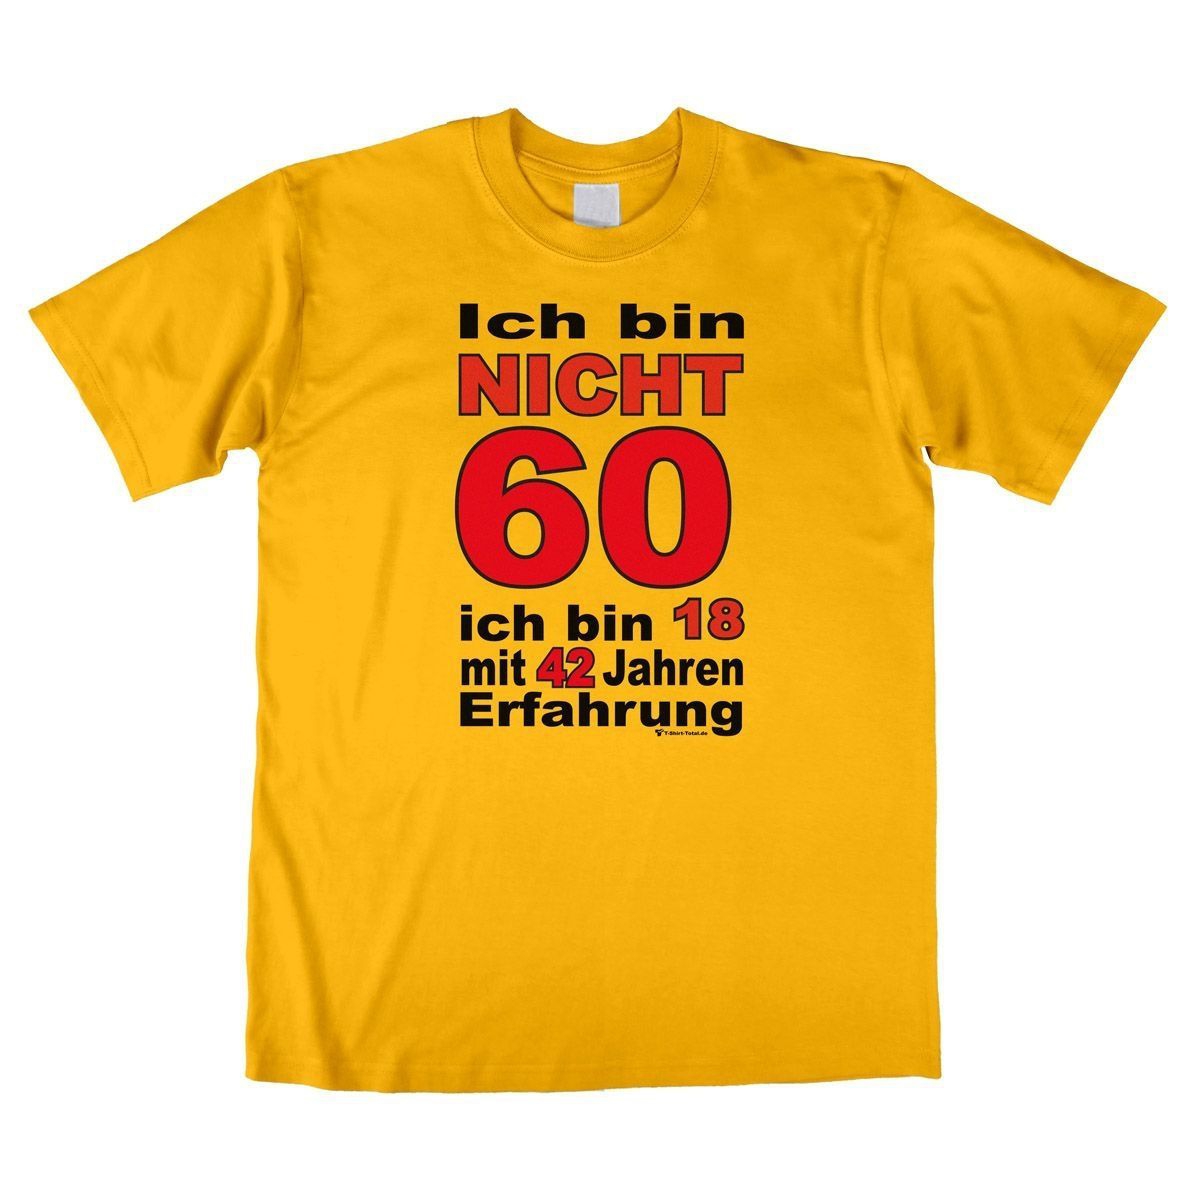 Bin nicht 60 Unisex T-Shirt gelb Large